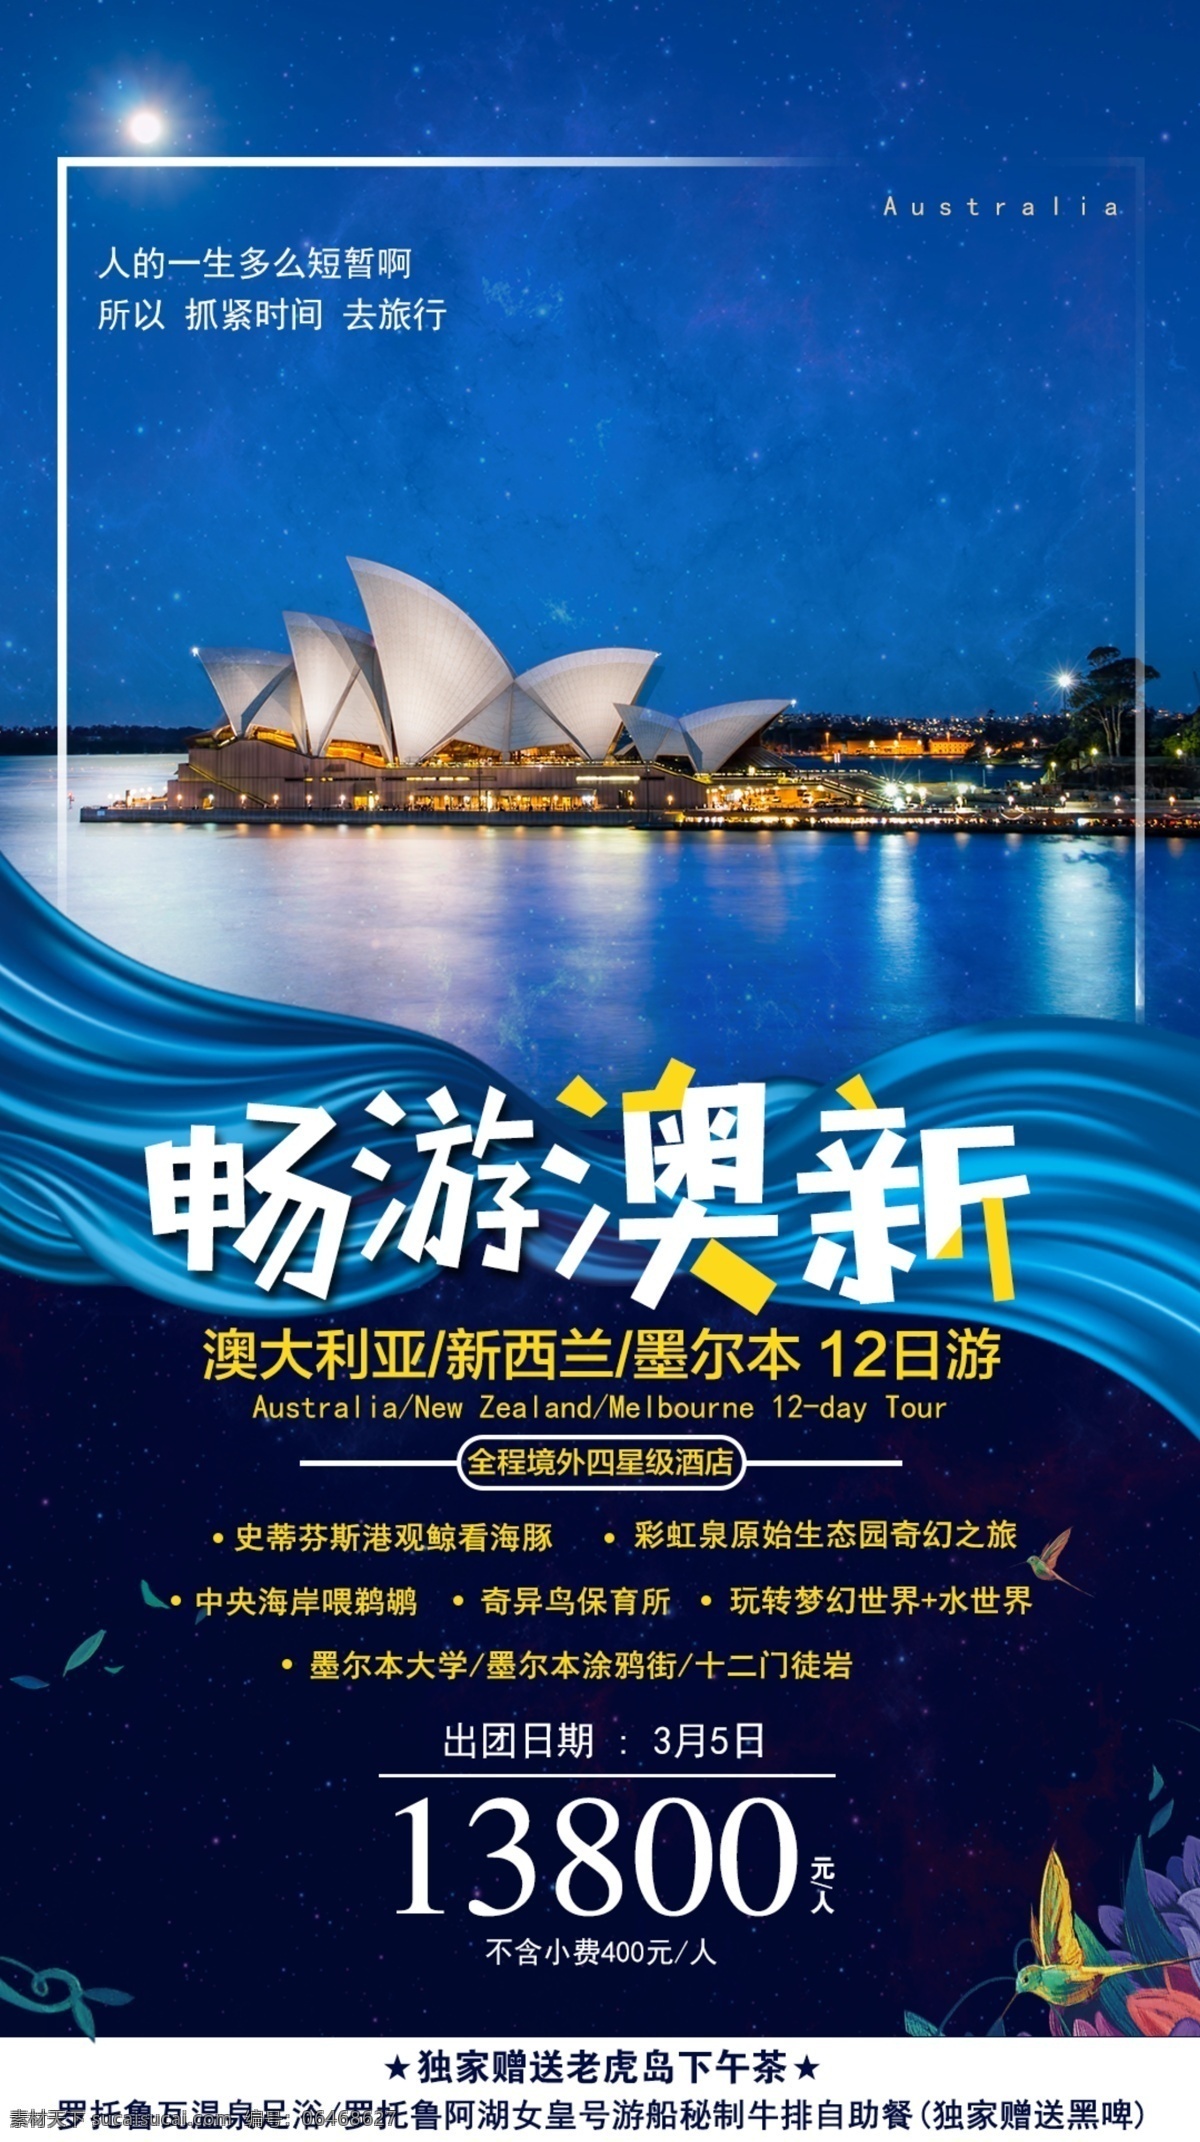 澳新旅游 澳新 澳洲 澳大利亚 澳大利亚旅游 旅游 朋友圈海报 微信海报 旅游海报